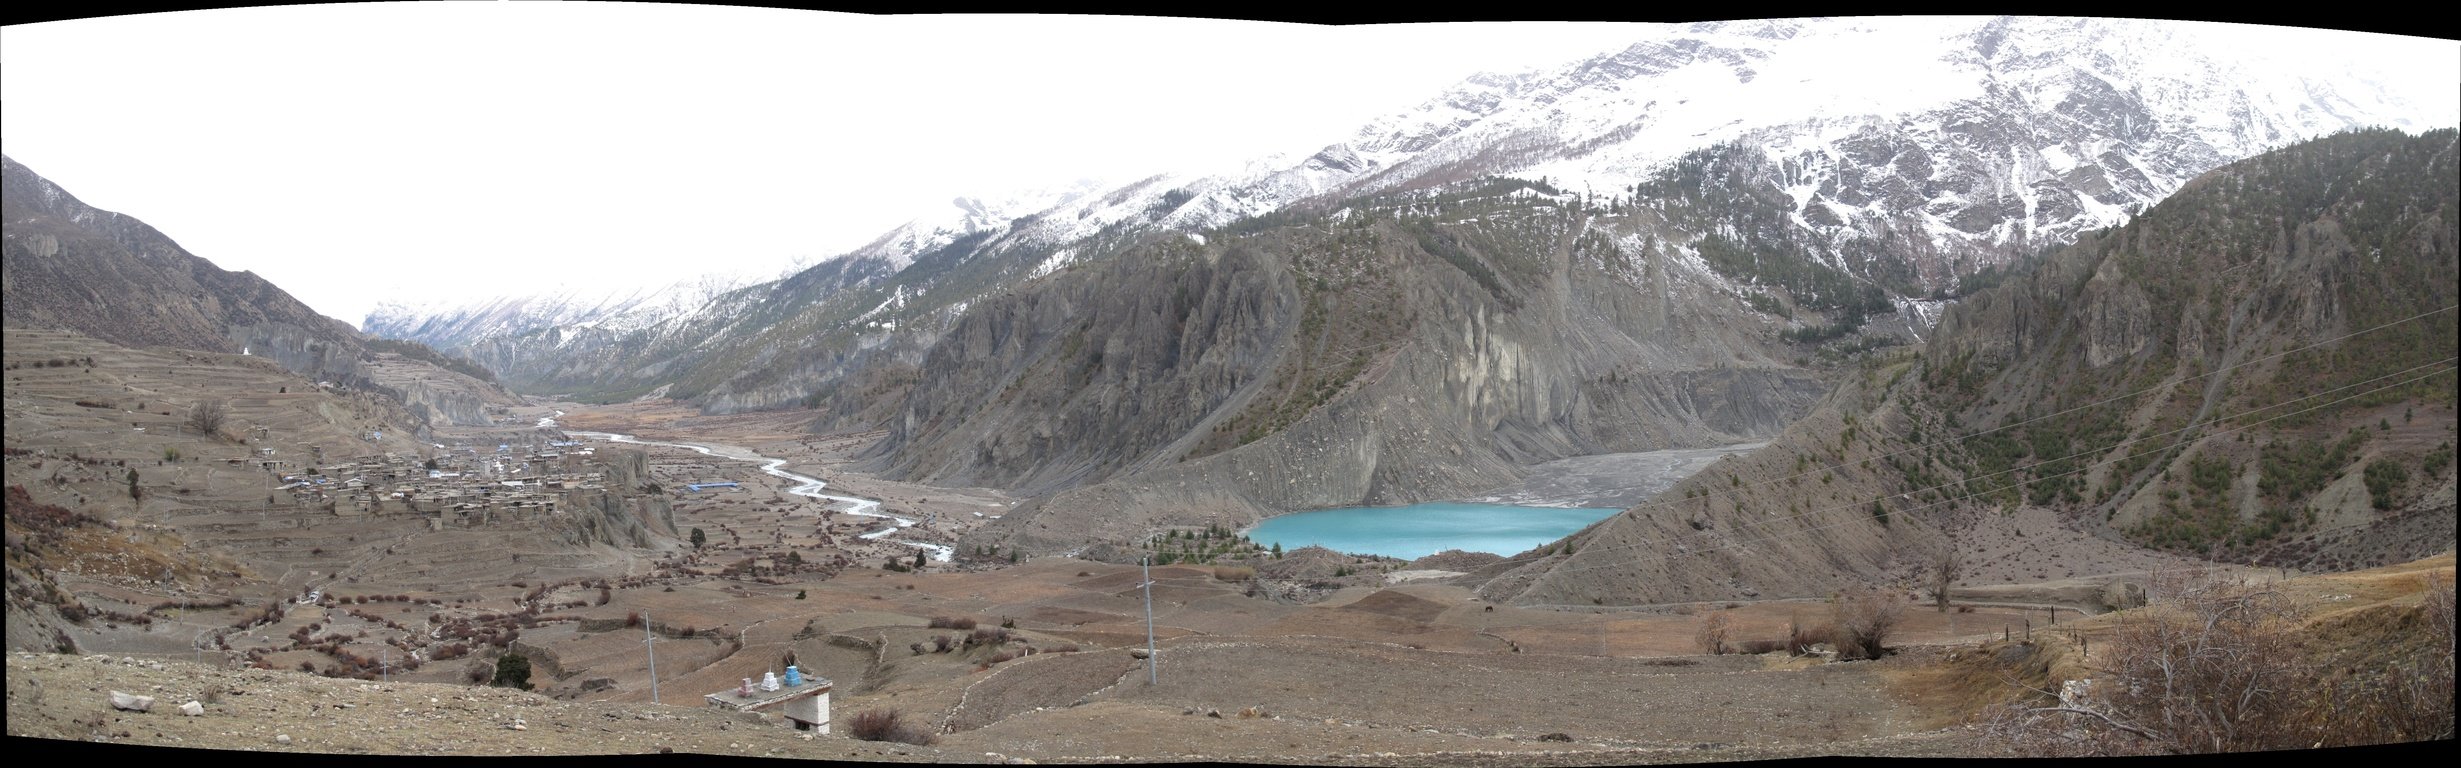 panoramabildblickzurckaufmanangunddengangapurnagletschersee.jpg